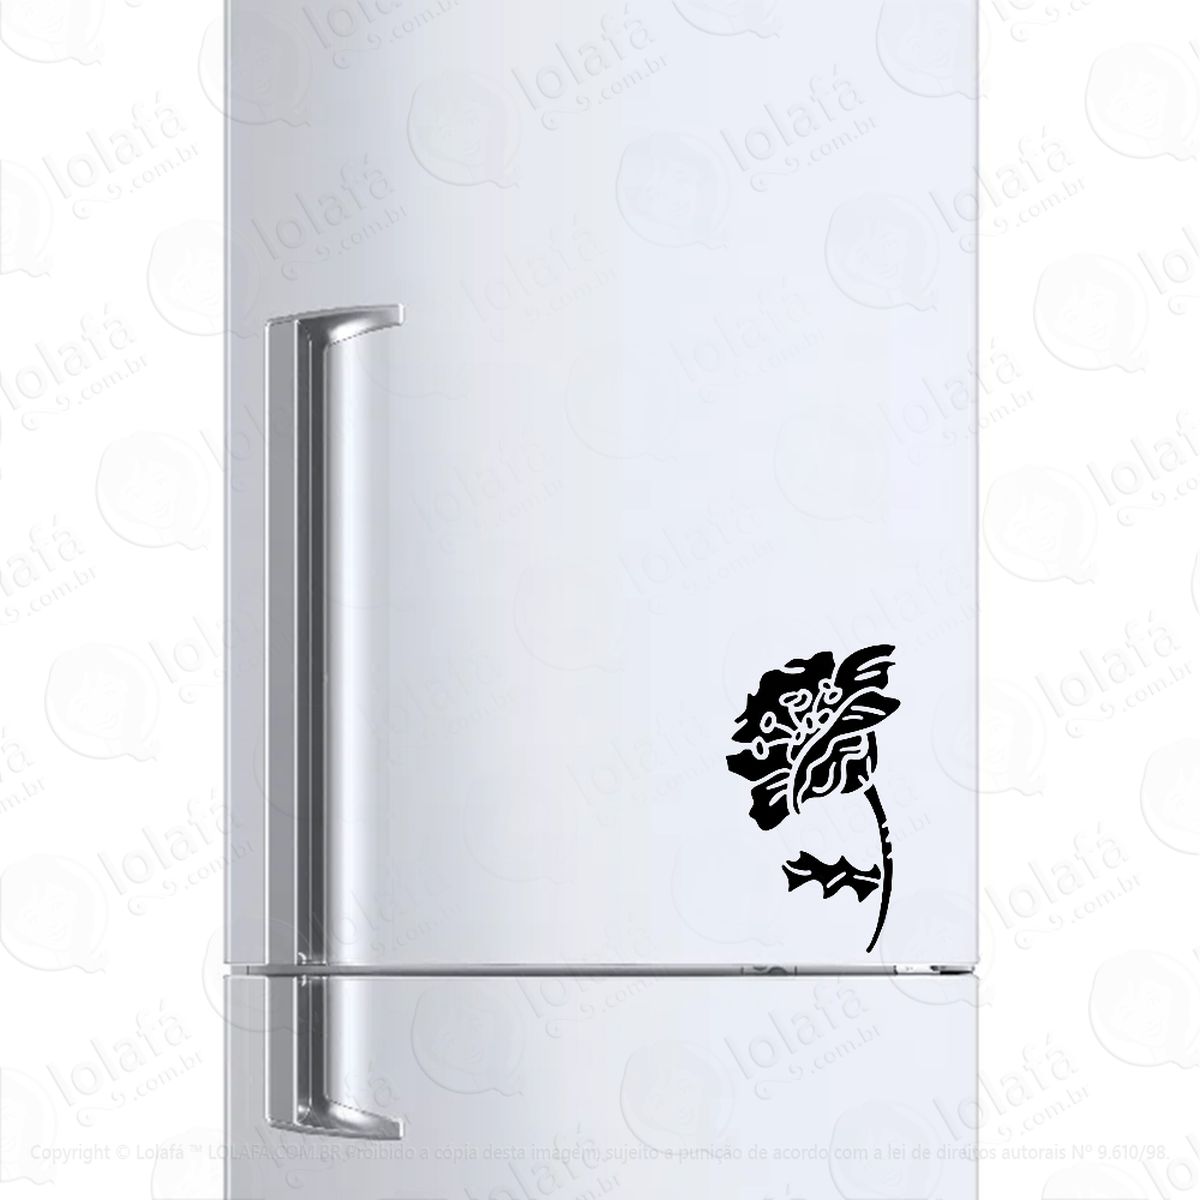 adesivo geladeira frigobar cervejeira flor decal mod:174